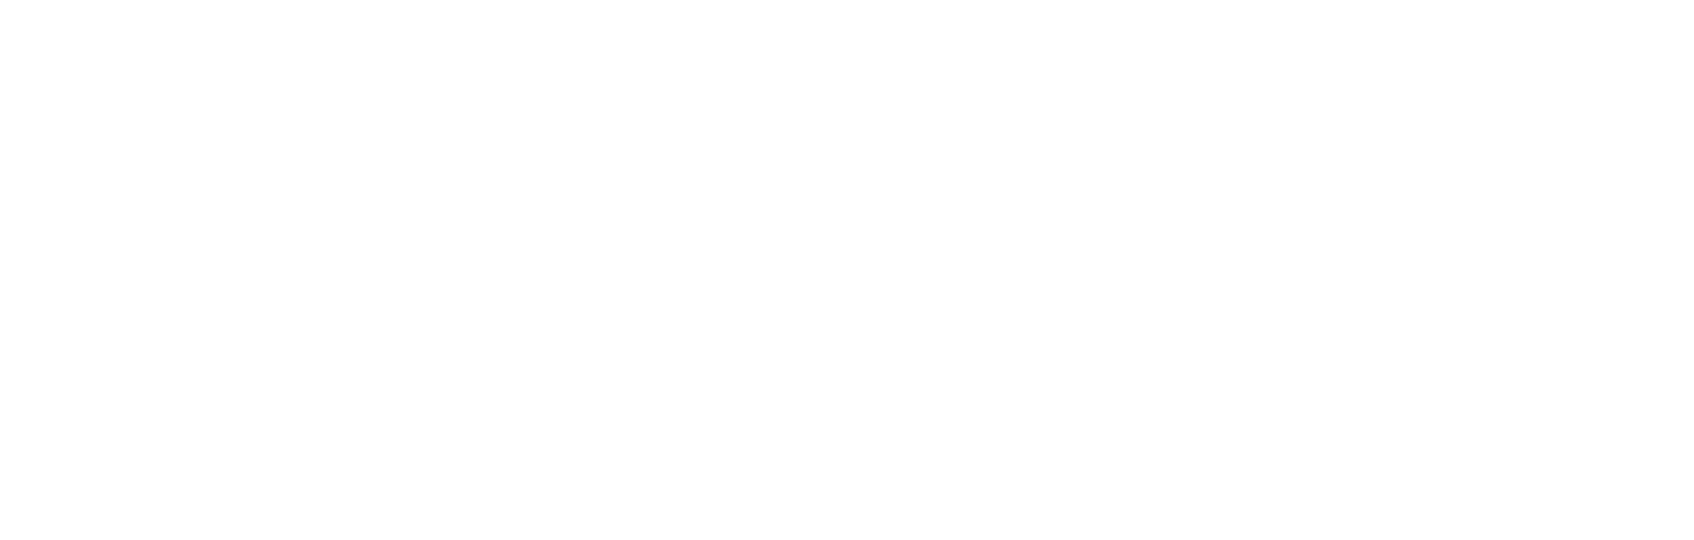 Allbirds logo large for dark backgrounds (transparent PNG)